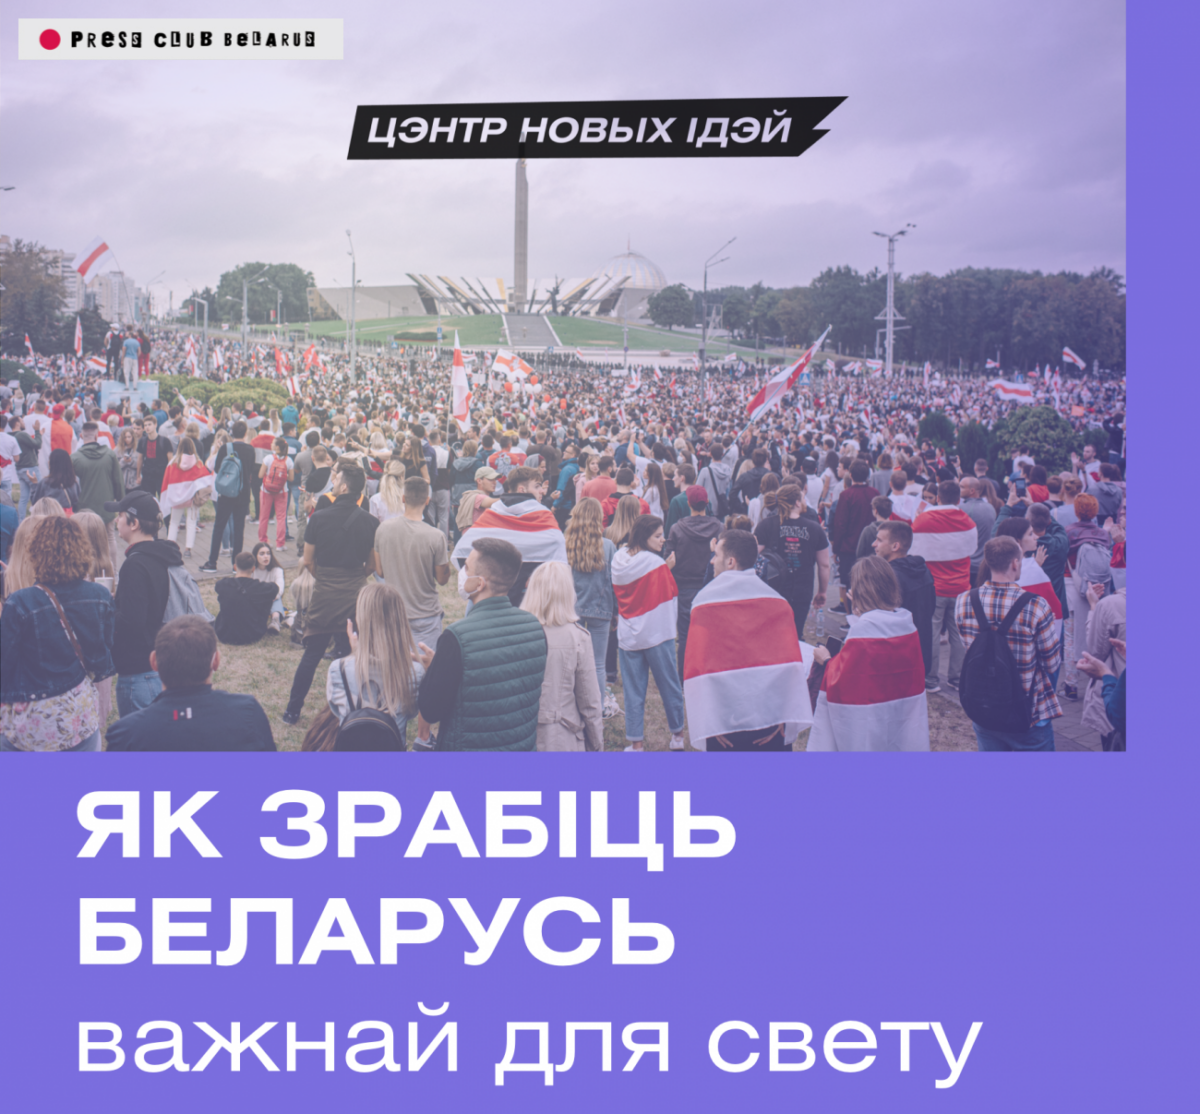 Как сделать Беларусь важной для мира? Онлайн-брифинг Центра новых идей